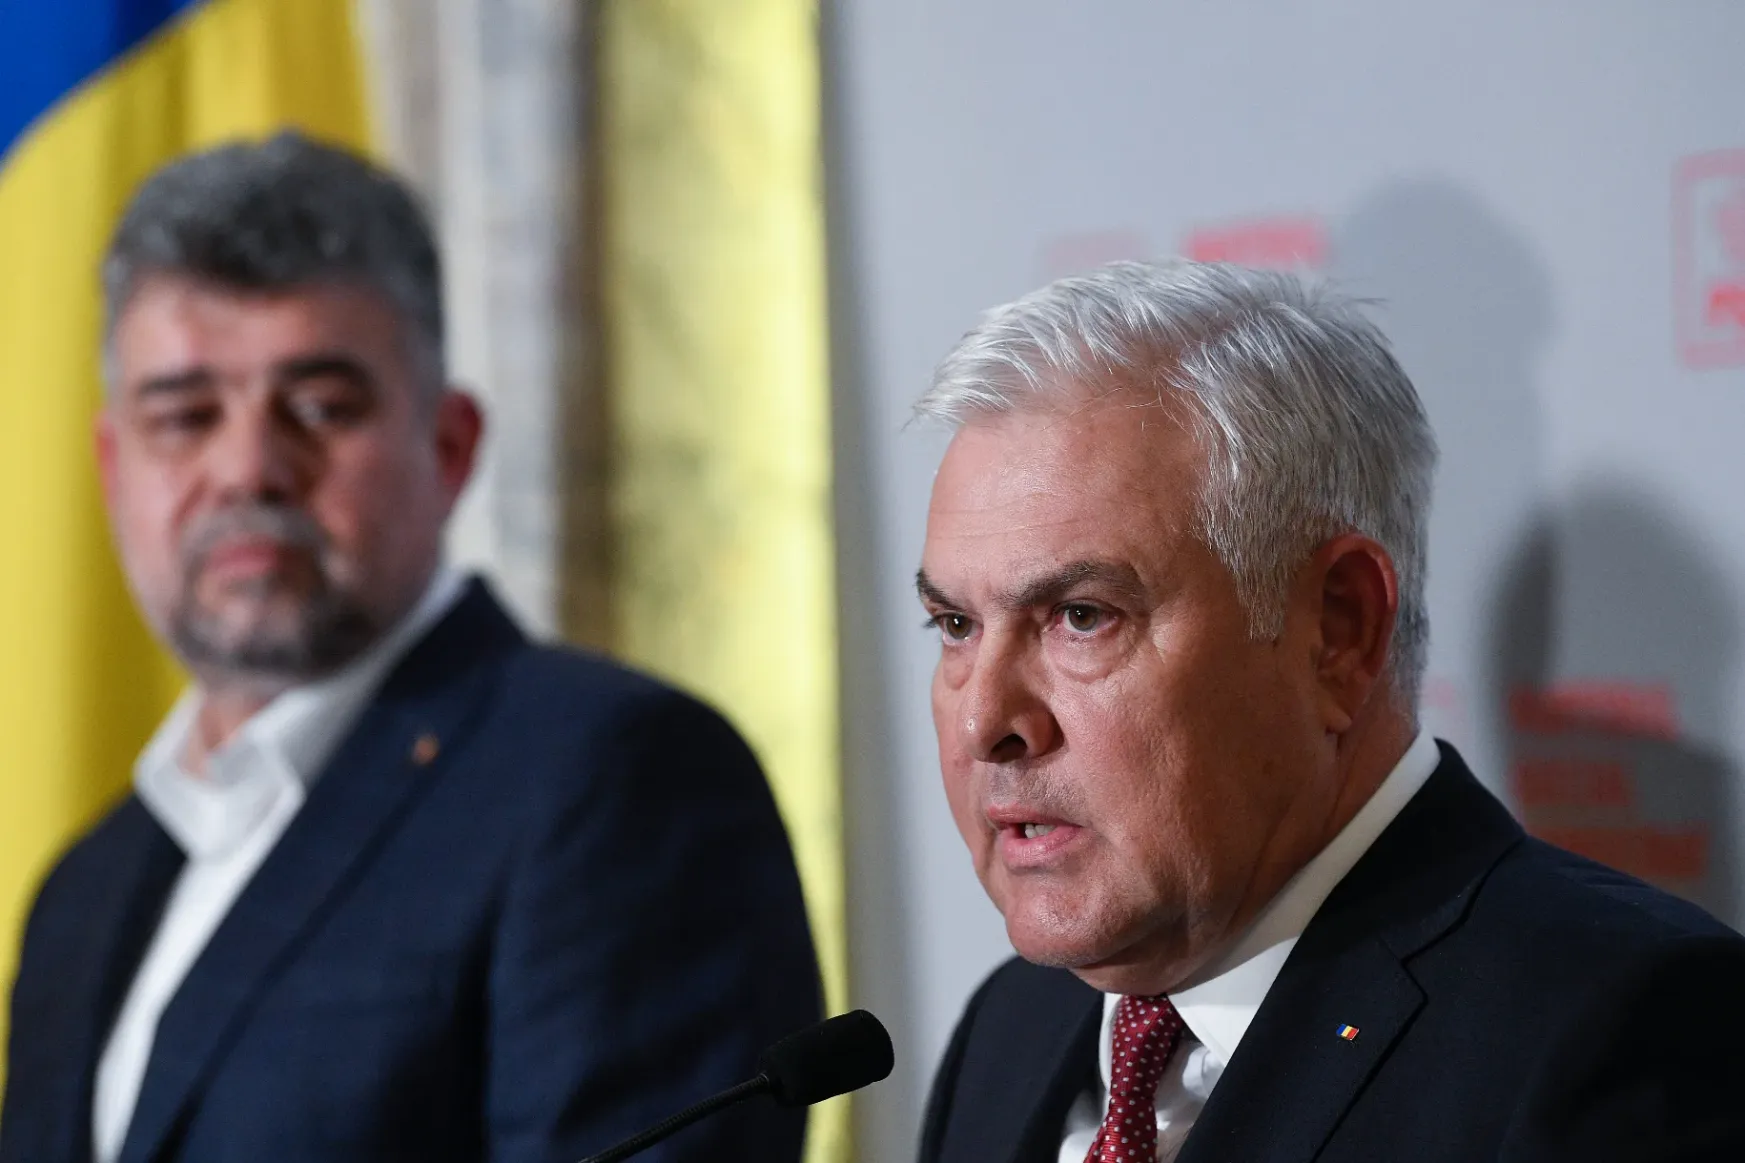 Angel Tîlvăr szenátor lett az új védelmi miniszter